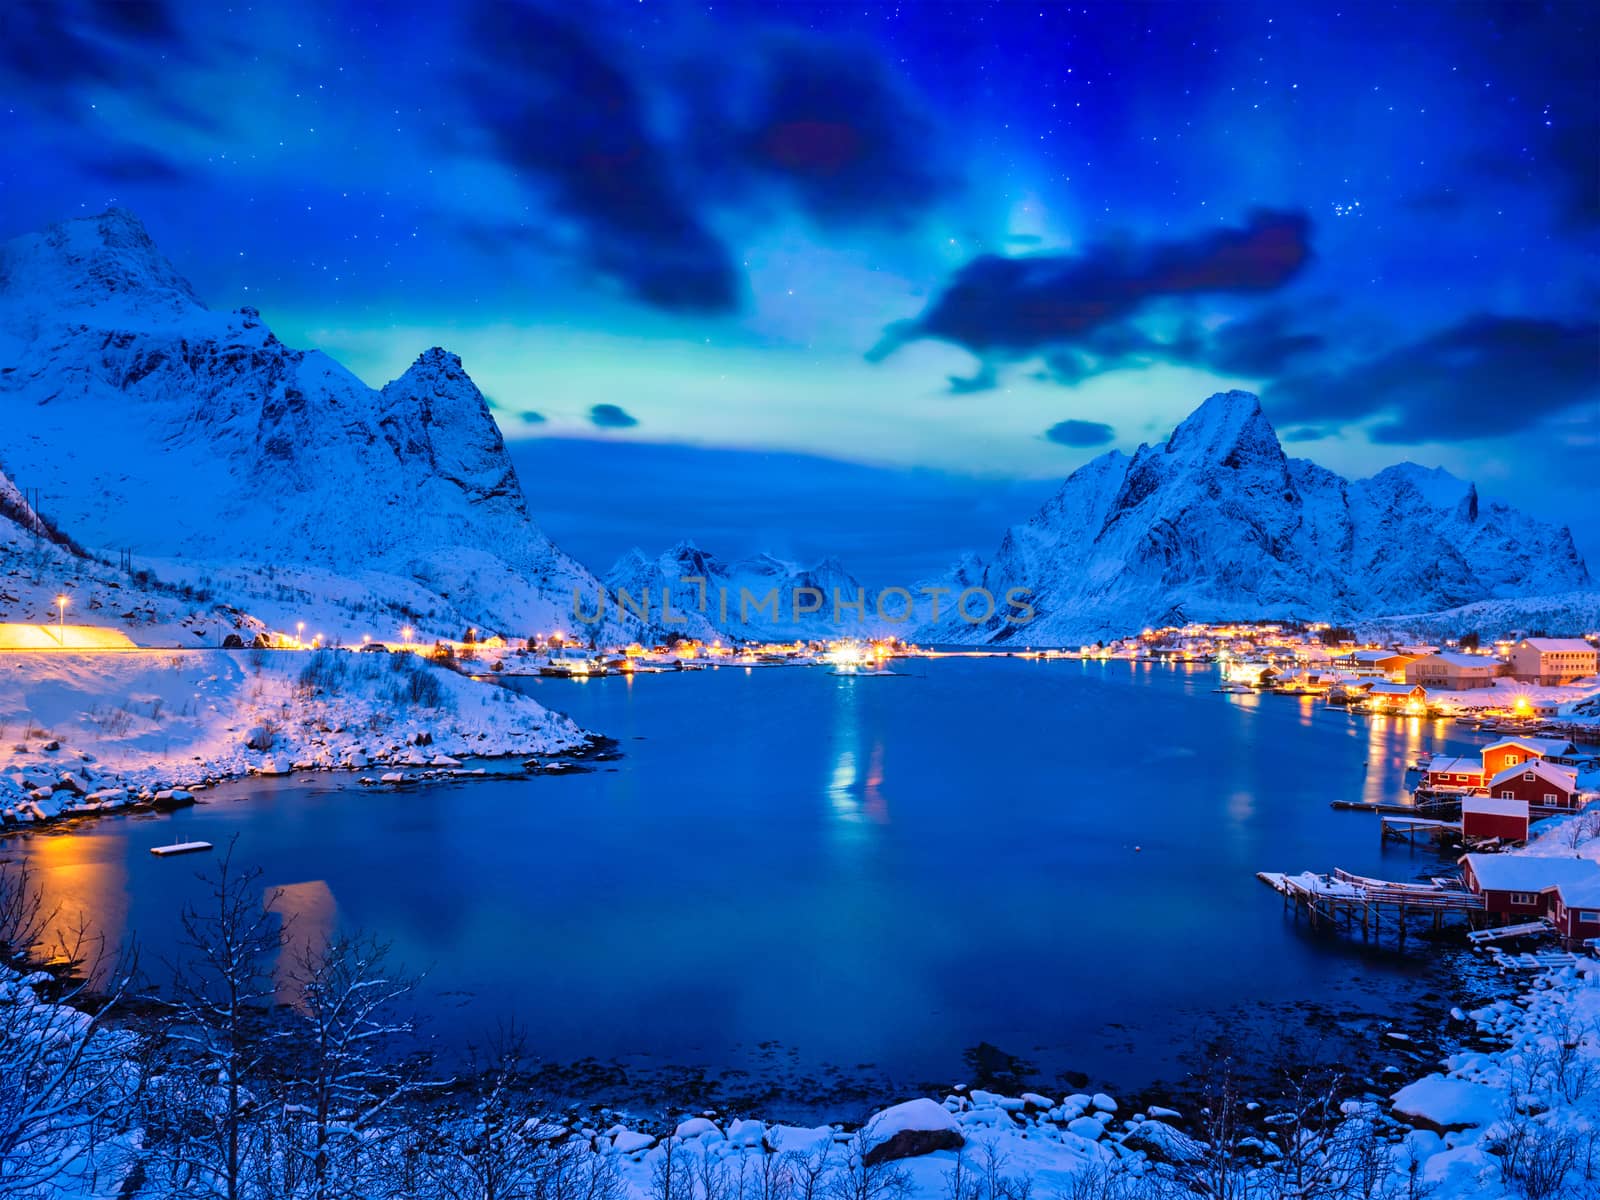 Reine village at night. Lofoten islands, Norway by dimol